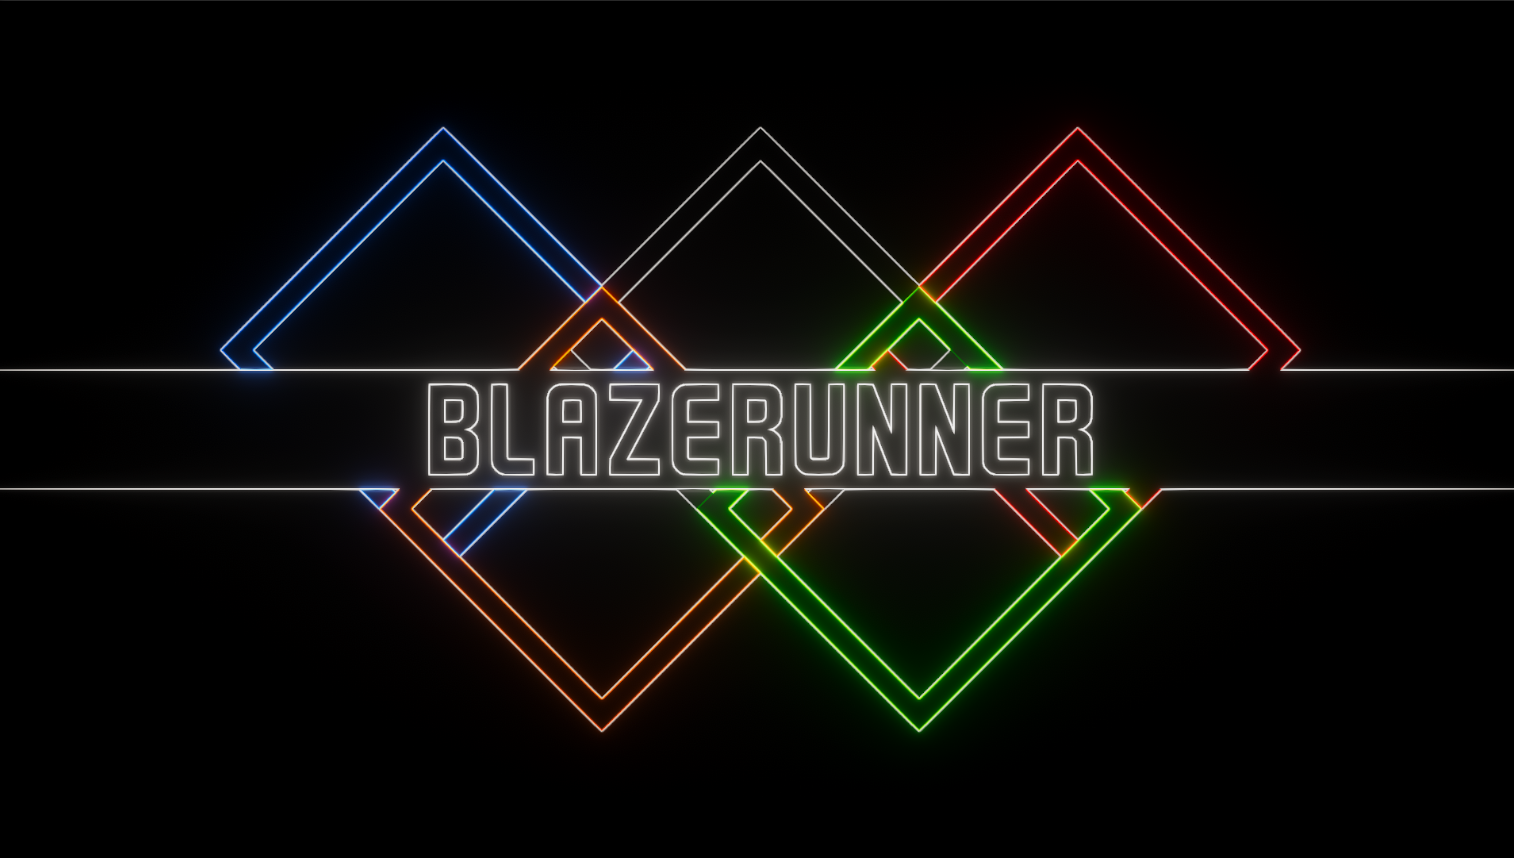 Blazerunner